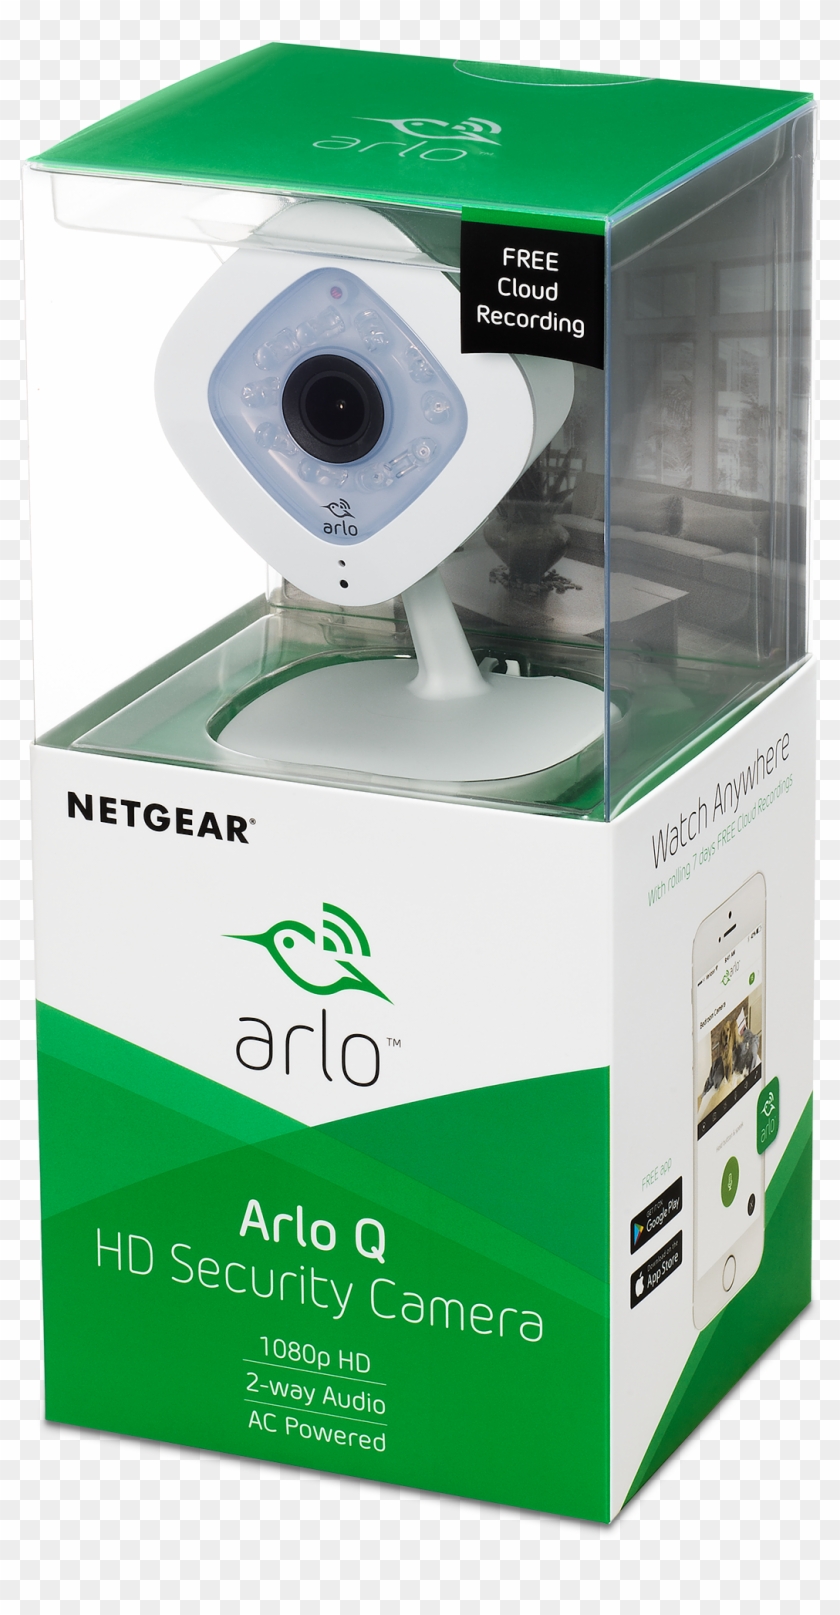 Arlo Q 1080p Hd Security Camera, 2-way Audio, Indoor - Arlo Clipart #5665268